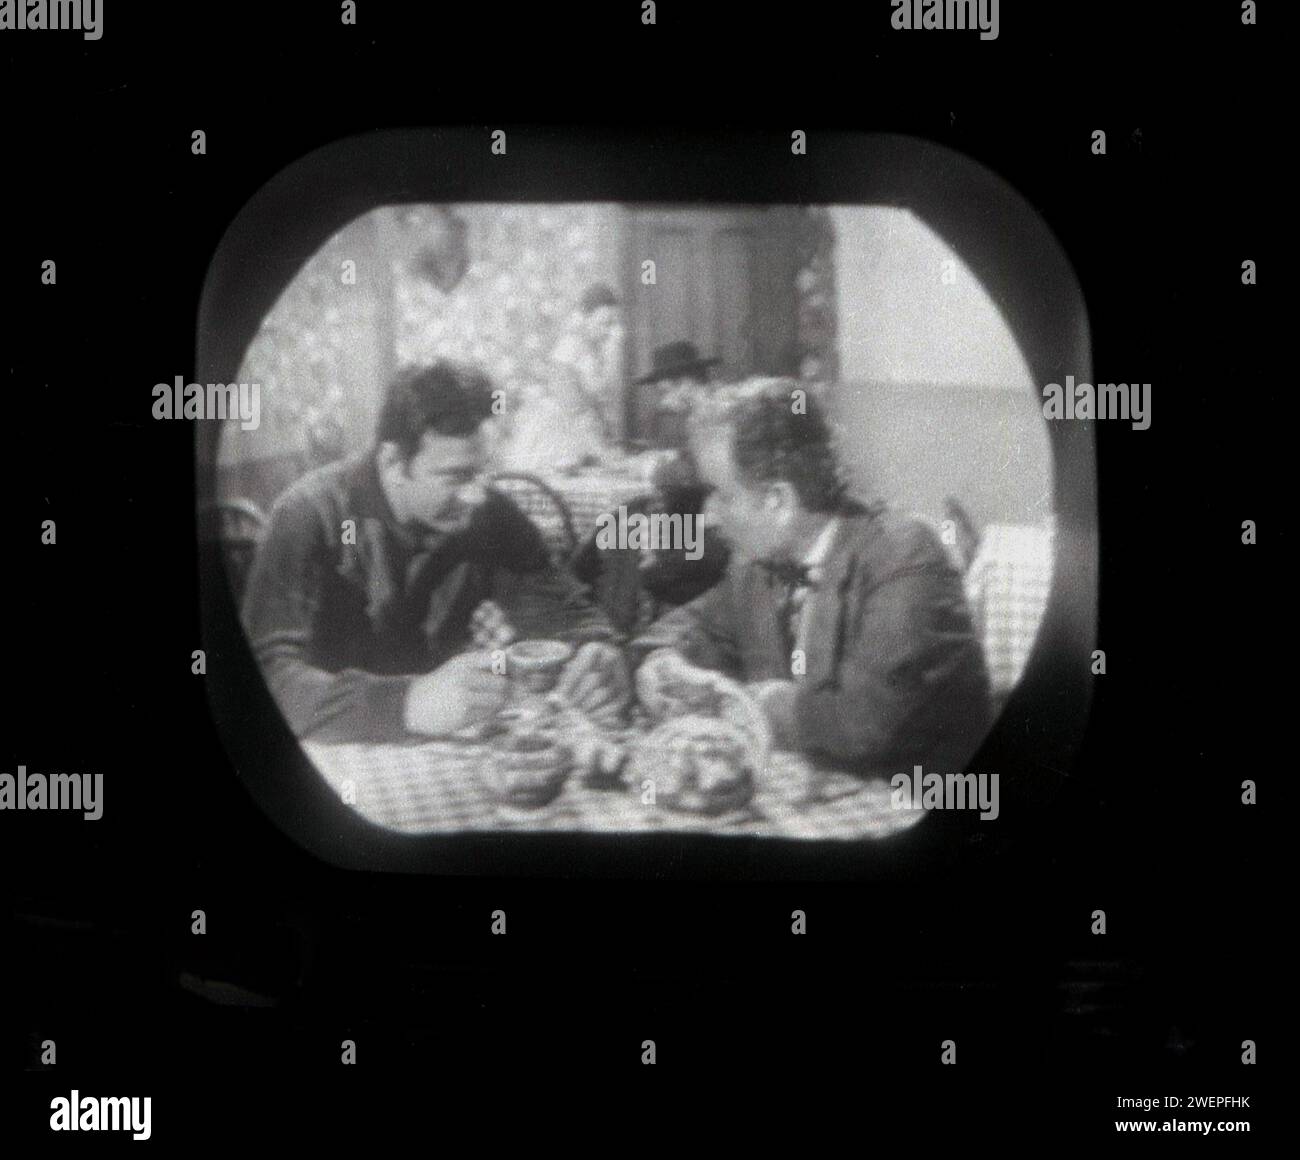 1960er Jahre, historisch, auf einem kleinen Bildschirm eines Fernsehers der Ära, die Fernsehserie Bonanza wird ausgestrahlt, zwei männliche Charaktere sitzen an einem Tisch. Die US-amerikanische Western-tv-Serie war mit 431 Episoden von 1959 bis 1973 sehr beliebt. Stockfoto